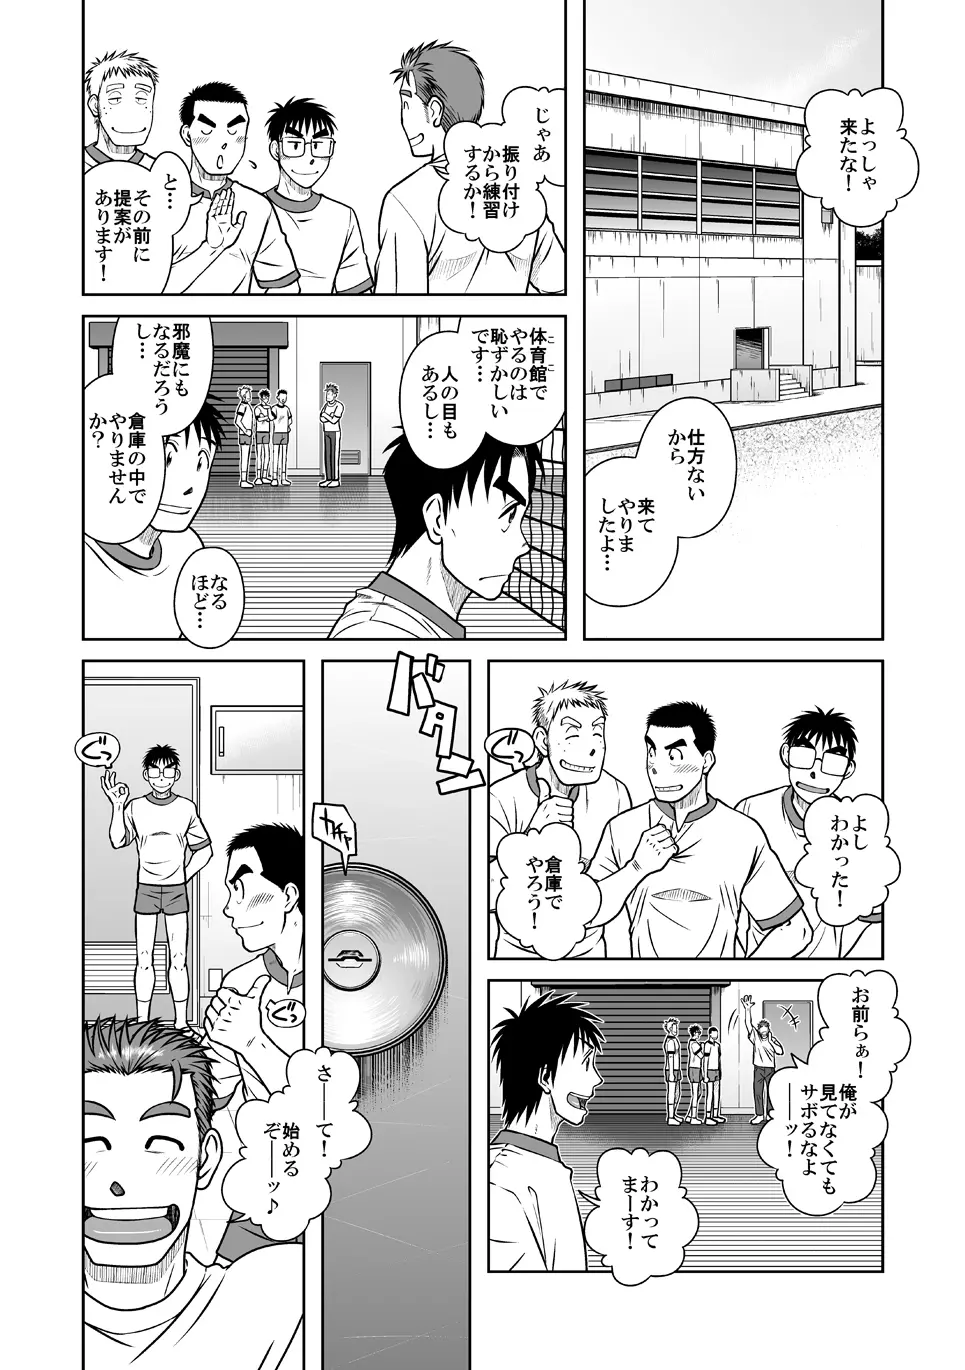 拓ヒラク再録集 まとめ! - page10